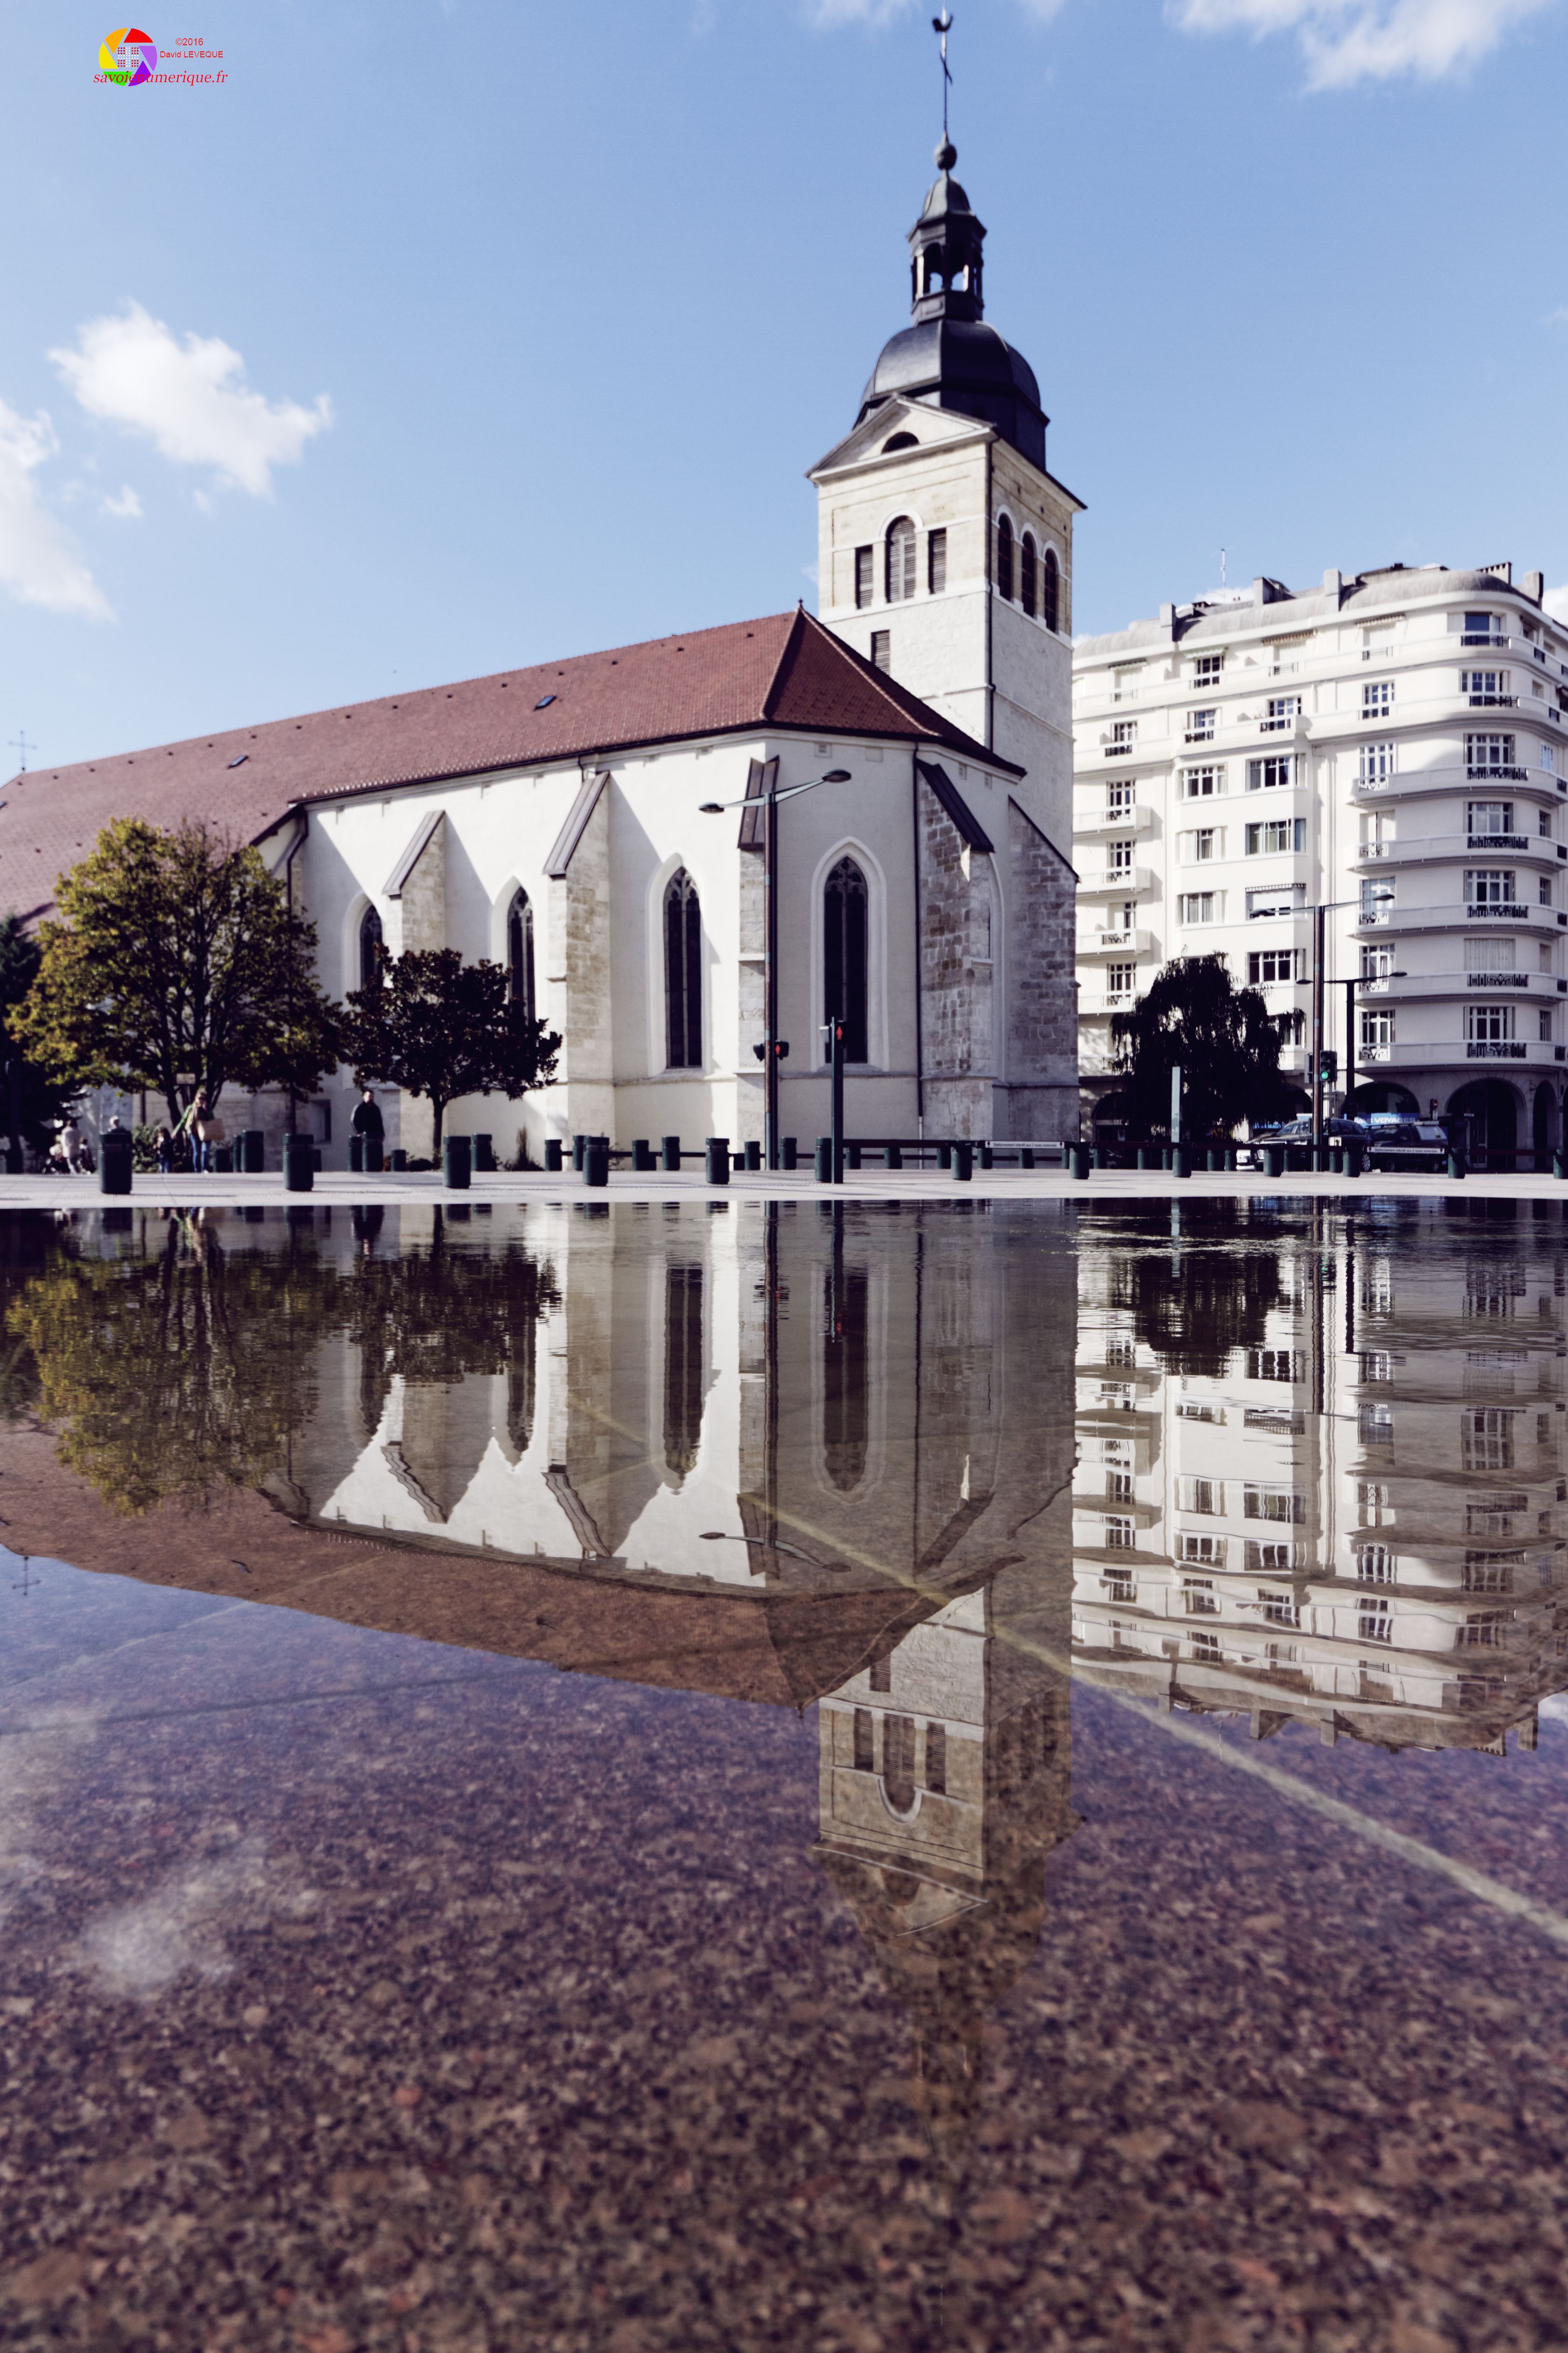 Reflet de l'église Saint-Maurice dans une fontaine, ANNECY